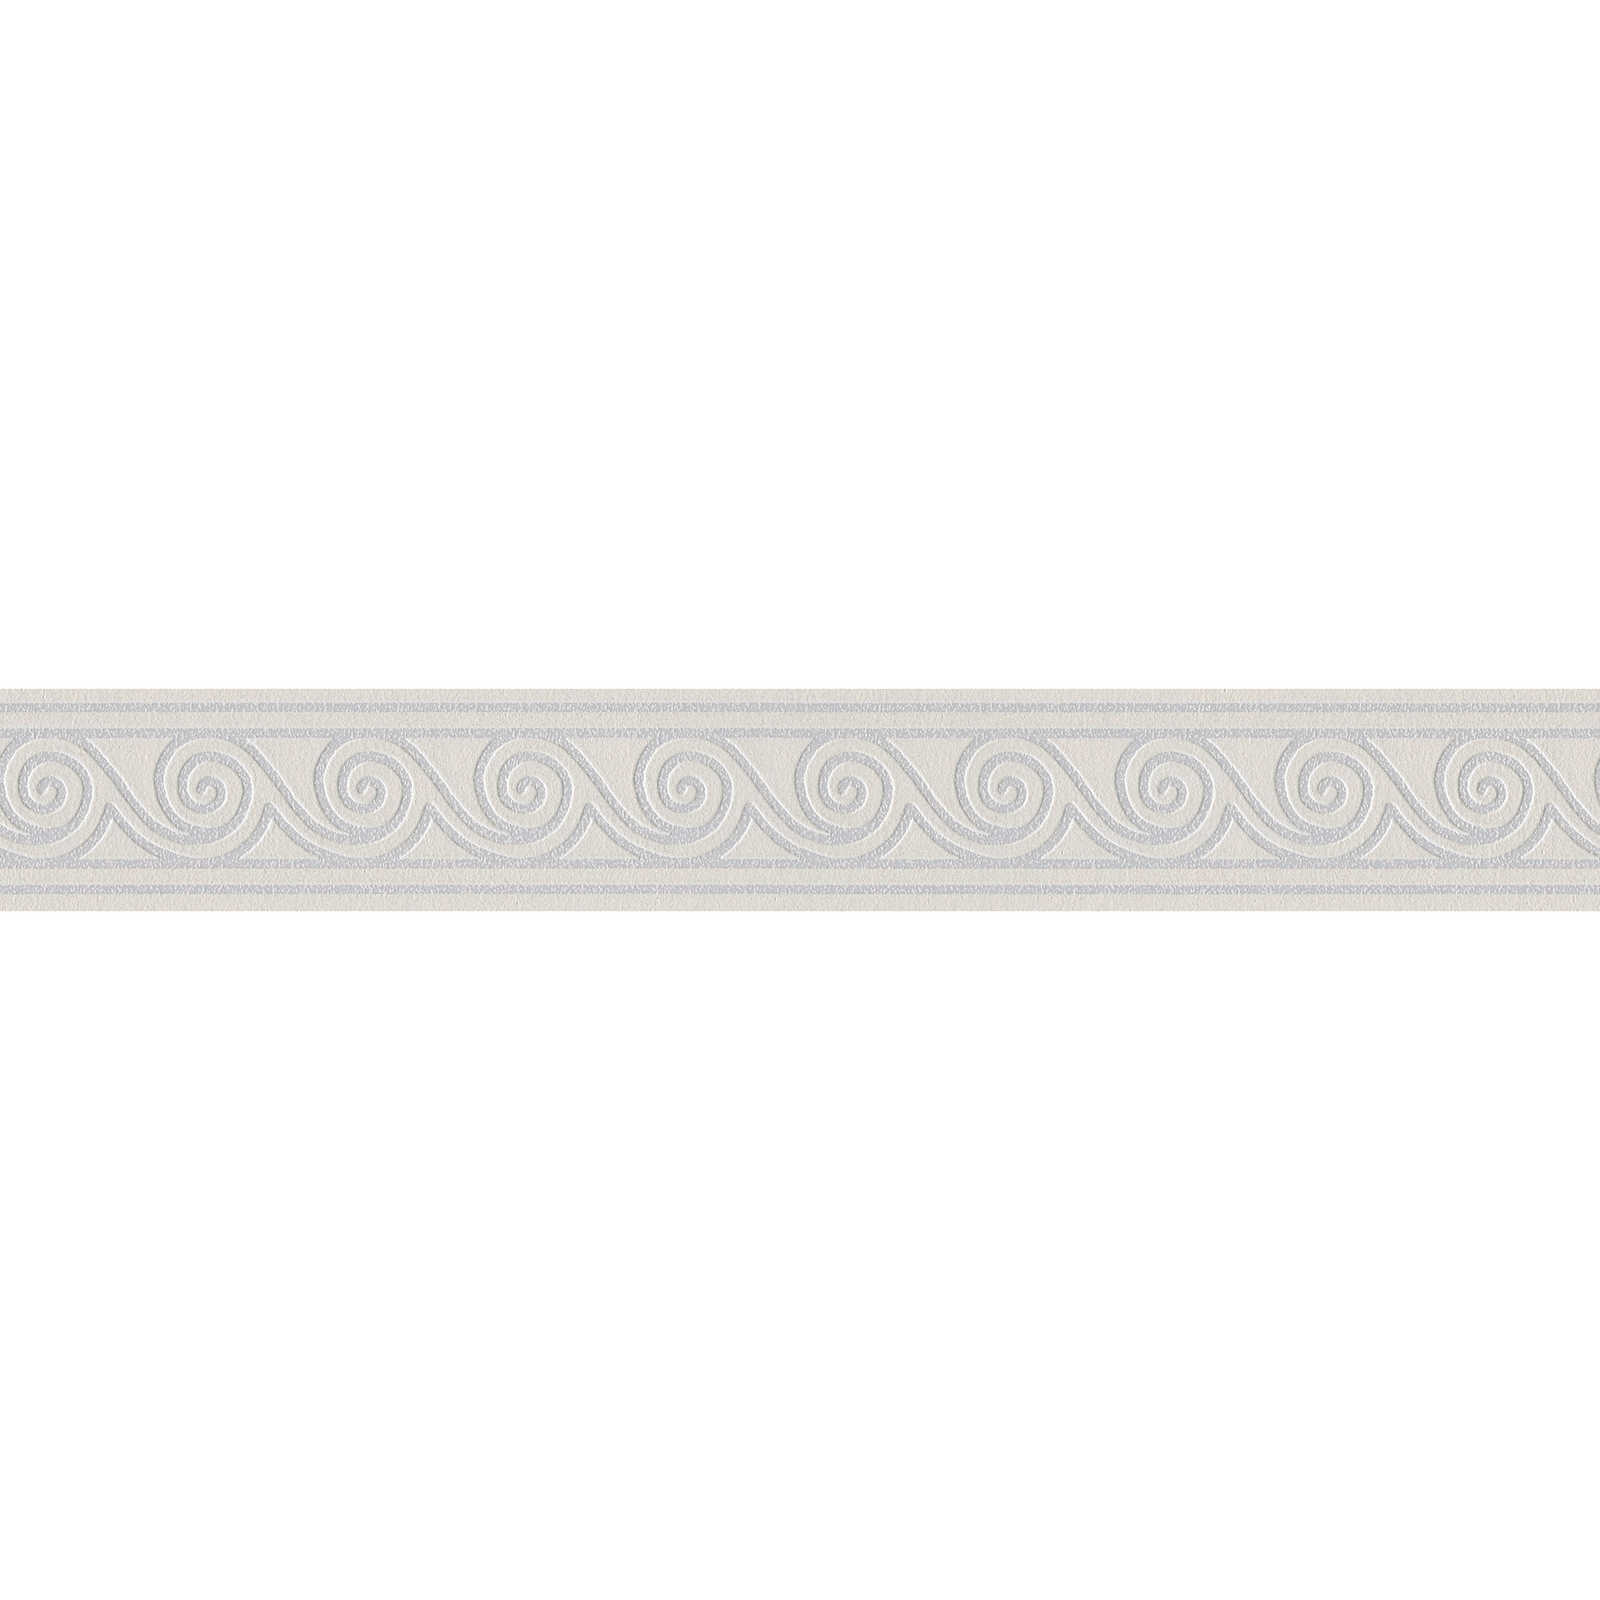         Tapeten Bordüre mit geschwungenem Linienmuster – Grau, Silber
    